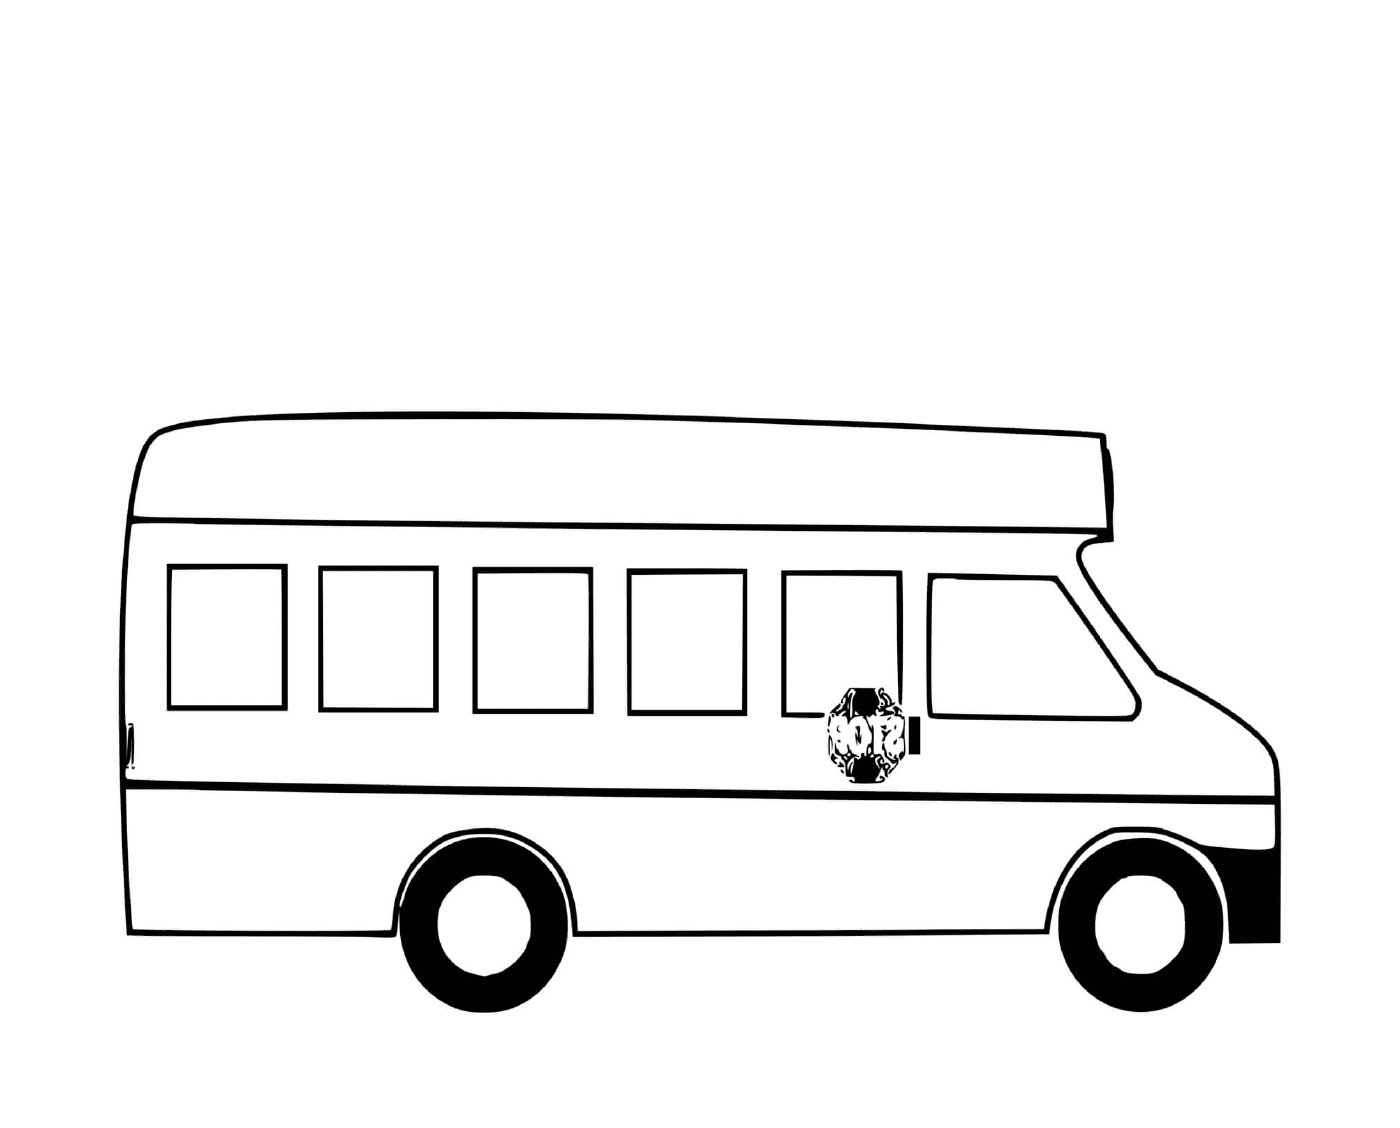  供学童乘坐的公共汽车 